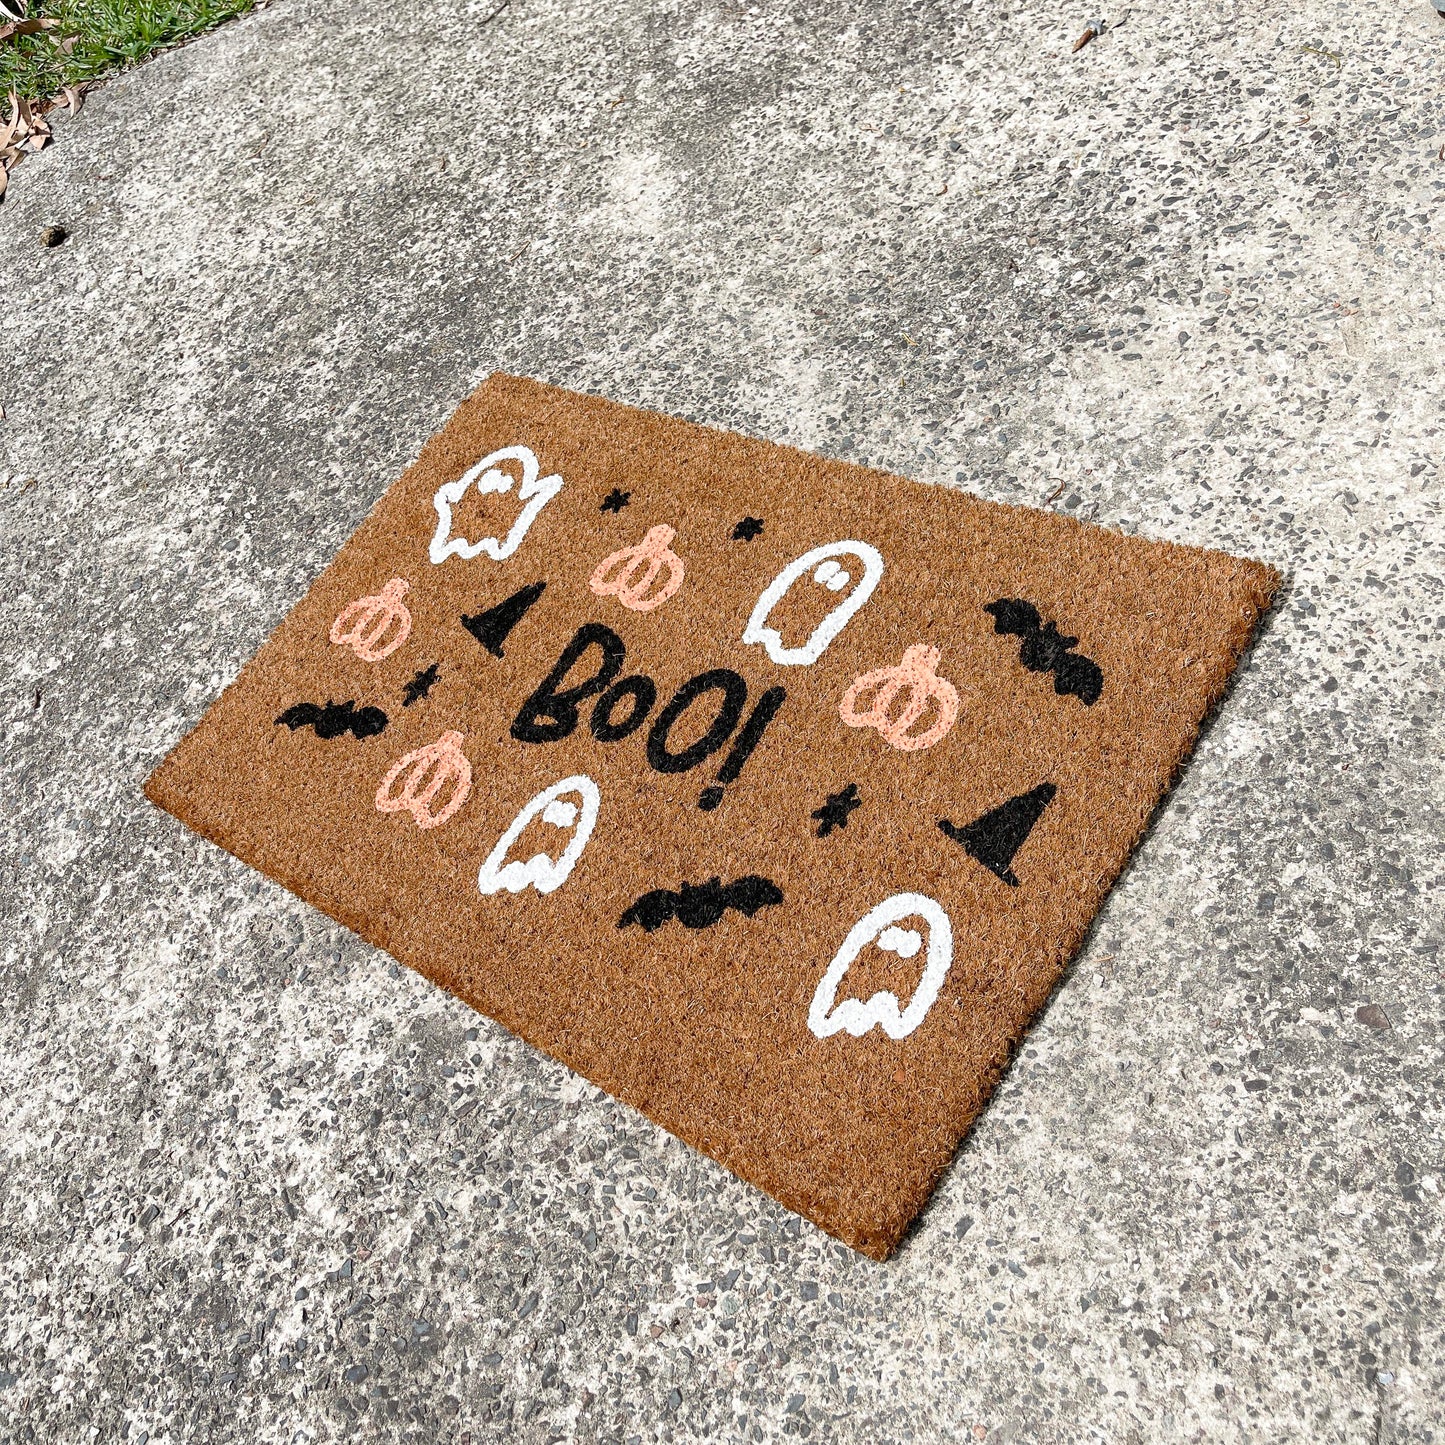 Limited Edition Halloween doormat, Halloween Doormat, Spooky Doormat, Creepy Doormat, Ghostly Doormat